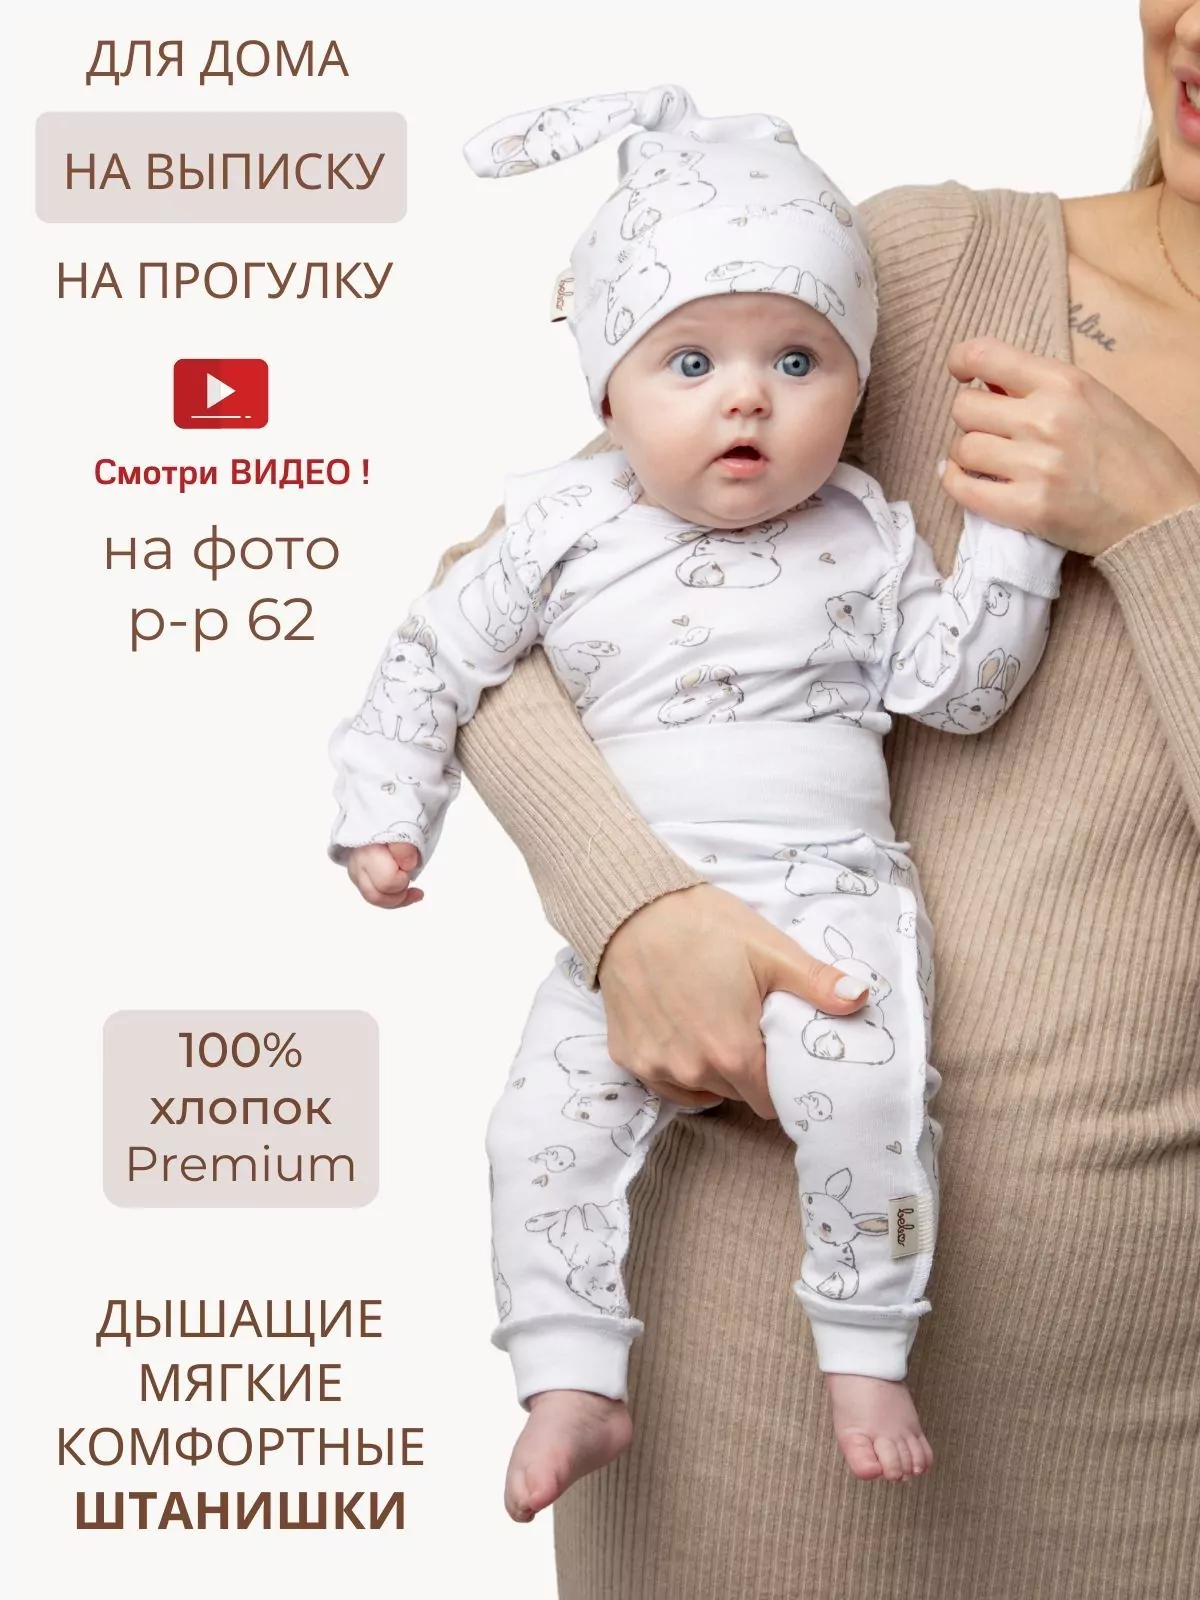 Интернет магазин игрушек irhidey.ru – купить детские игрушки по низким ценам с доставкой по России